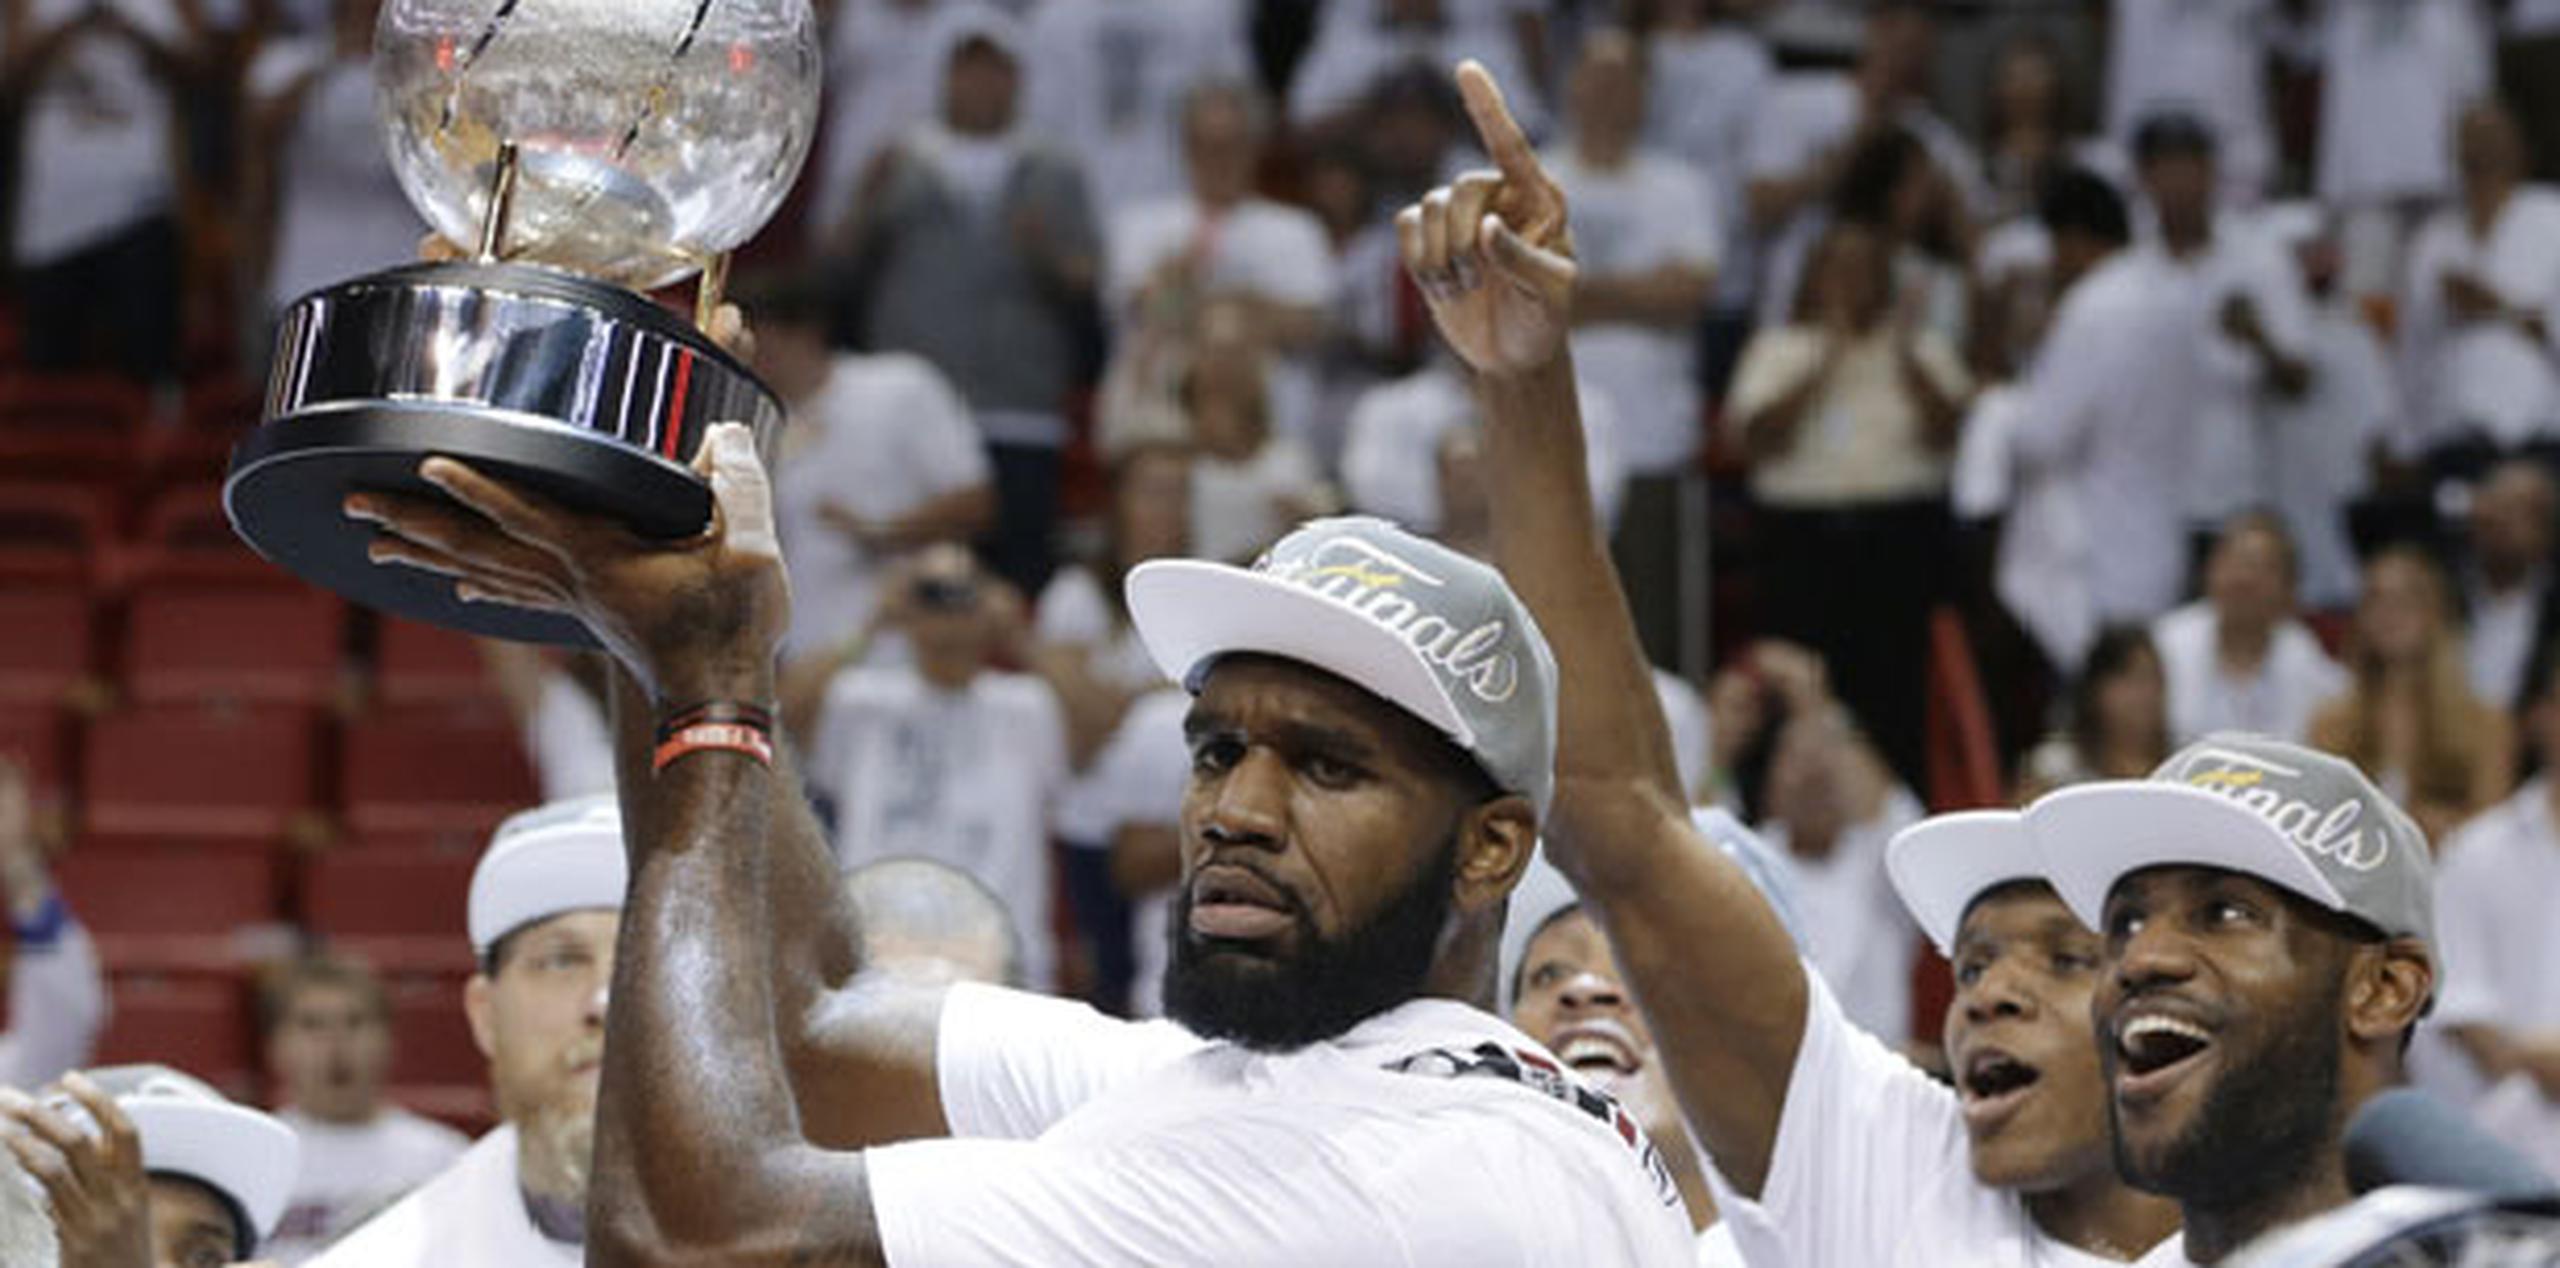 Ayer, el Heat eliminó a los Pacers para buscar su tercer campeonato consecutivo. (AP)